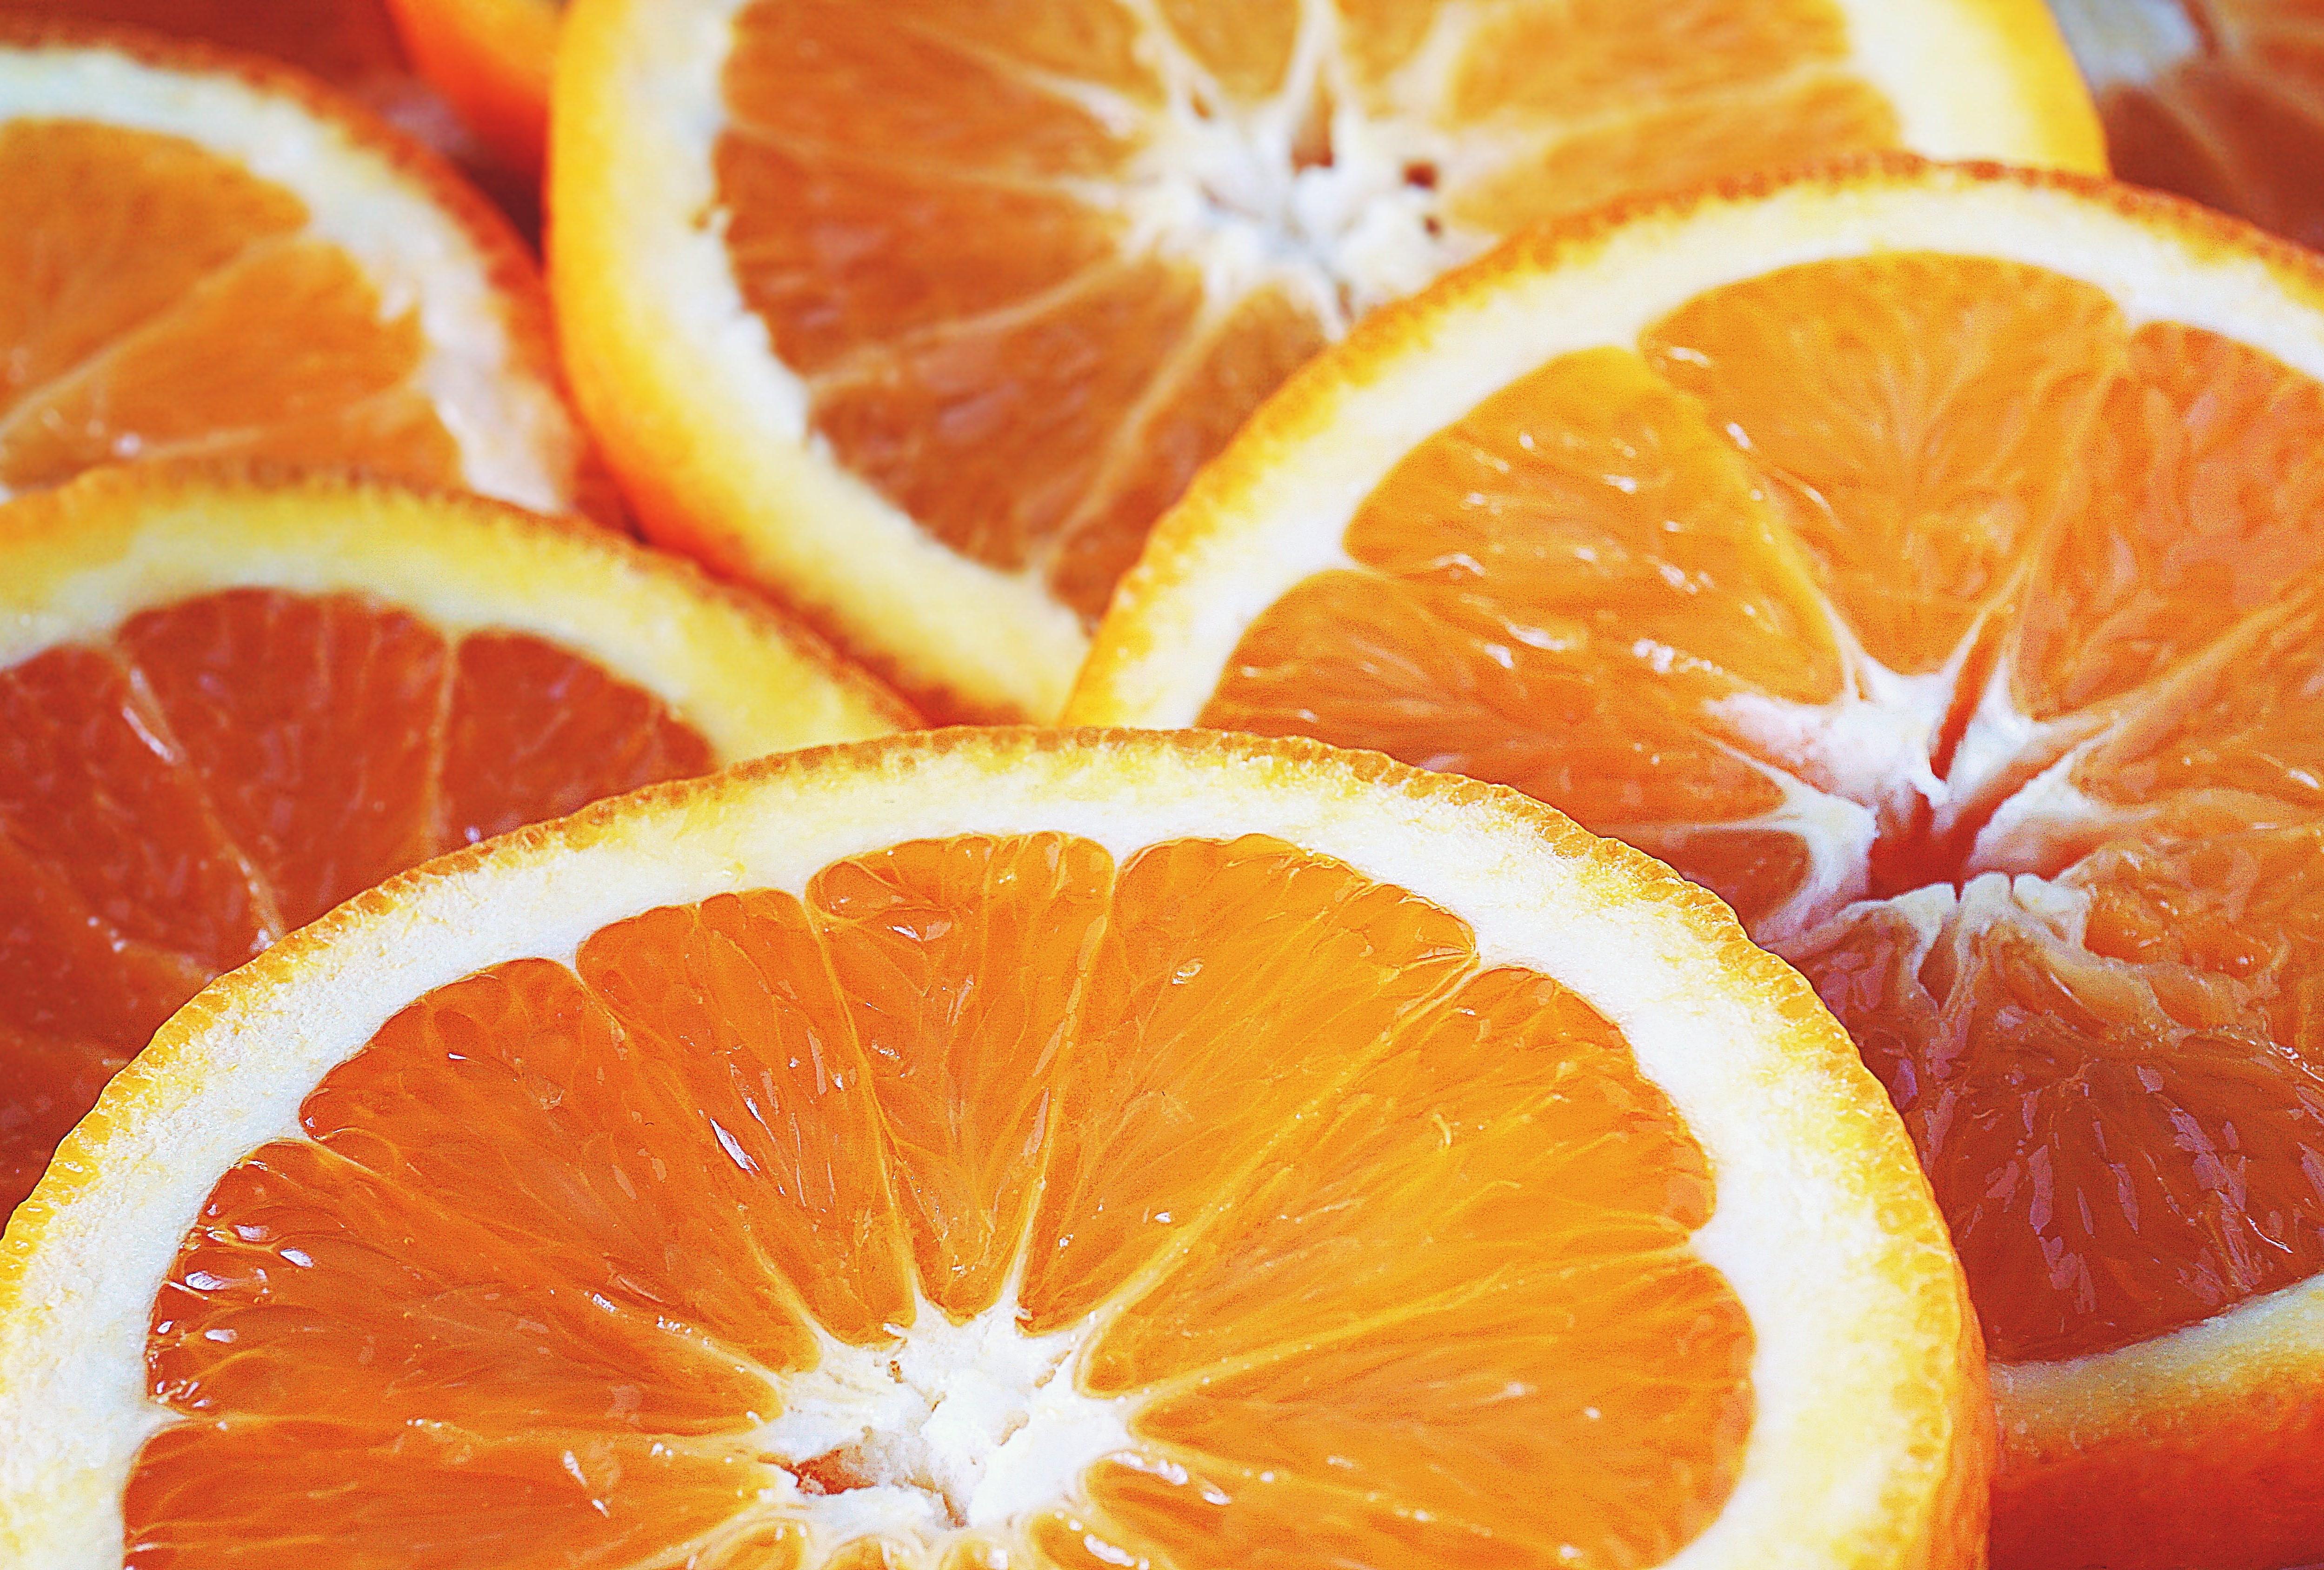 一顆顆剖辦的新鮮甜橙汁水欲滴，仿佛下一秒就會濺出鮮甜可口的果汁。空氣中充斥著甜橙鮮美、圓潤的香氣，美好的一天就此開始。